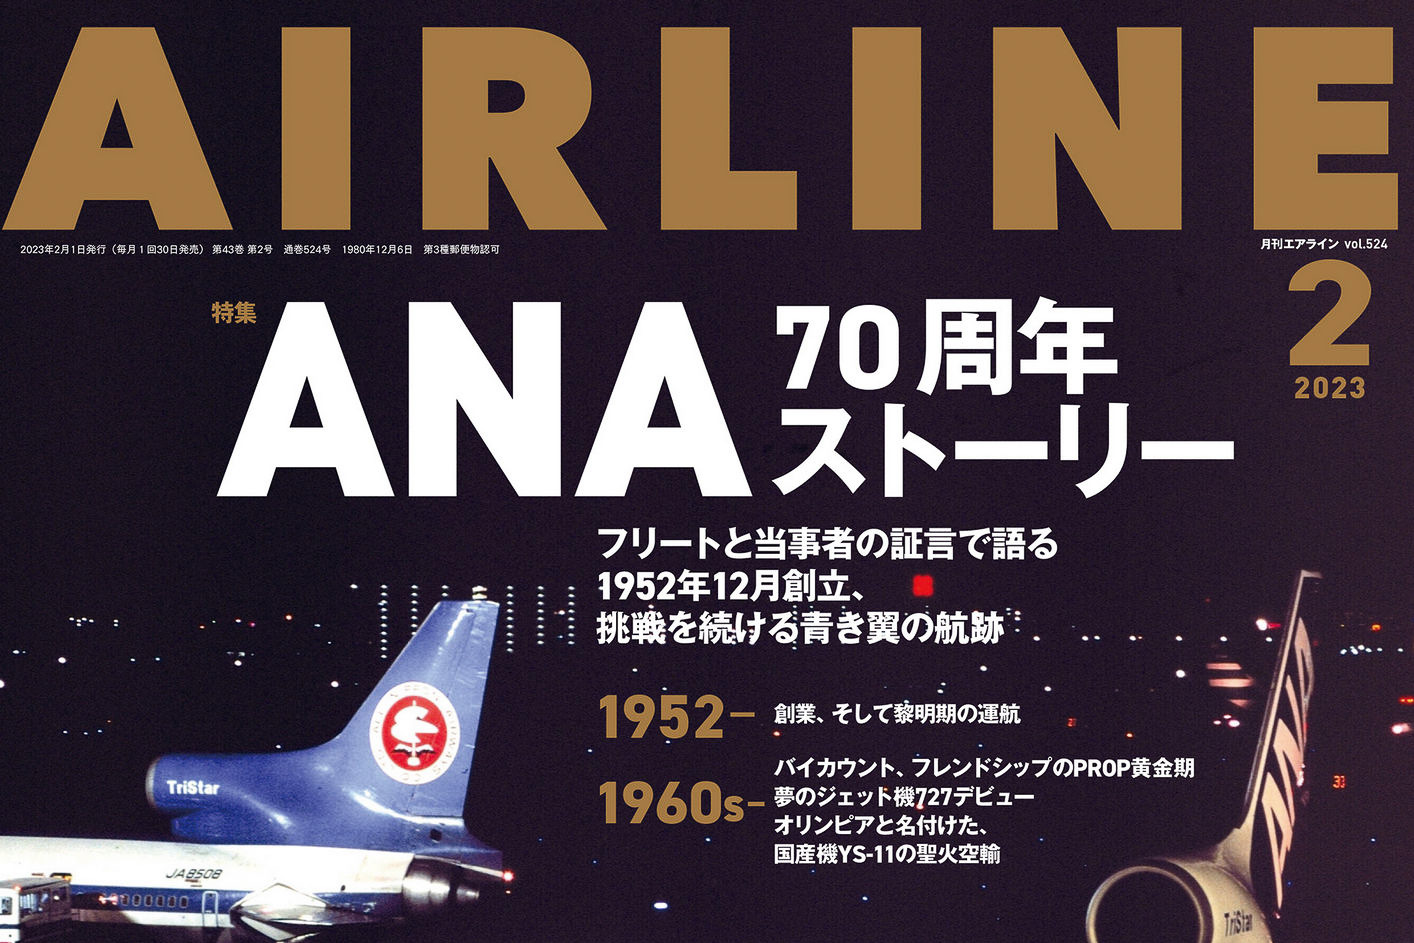 月刊エアライン2023年2月号、特集は1952年12月創立の「ANA 70周年